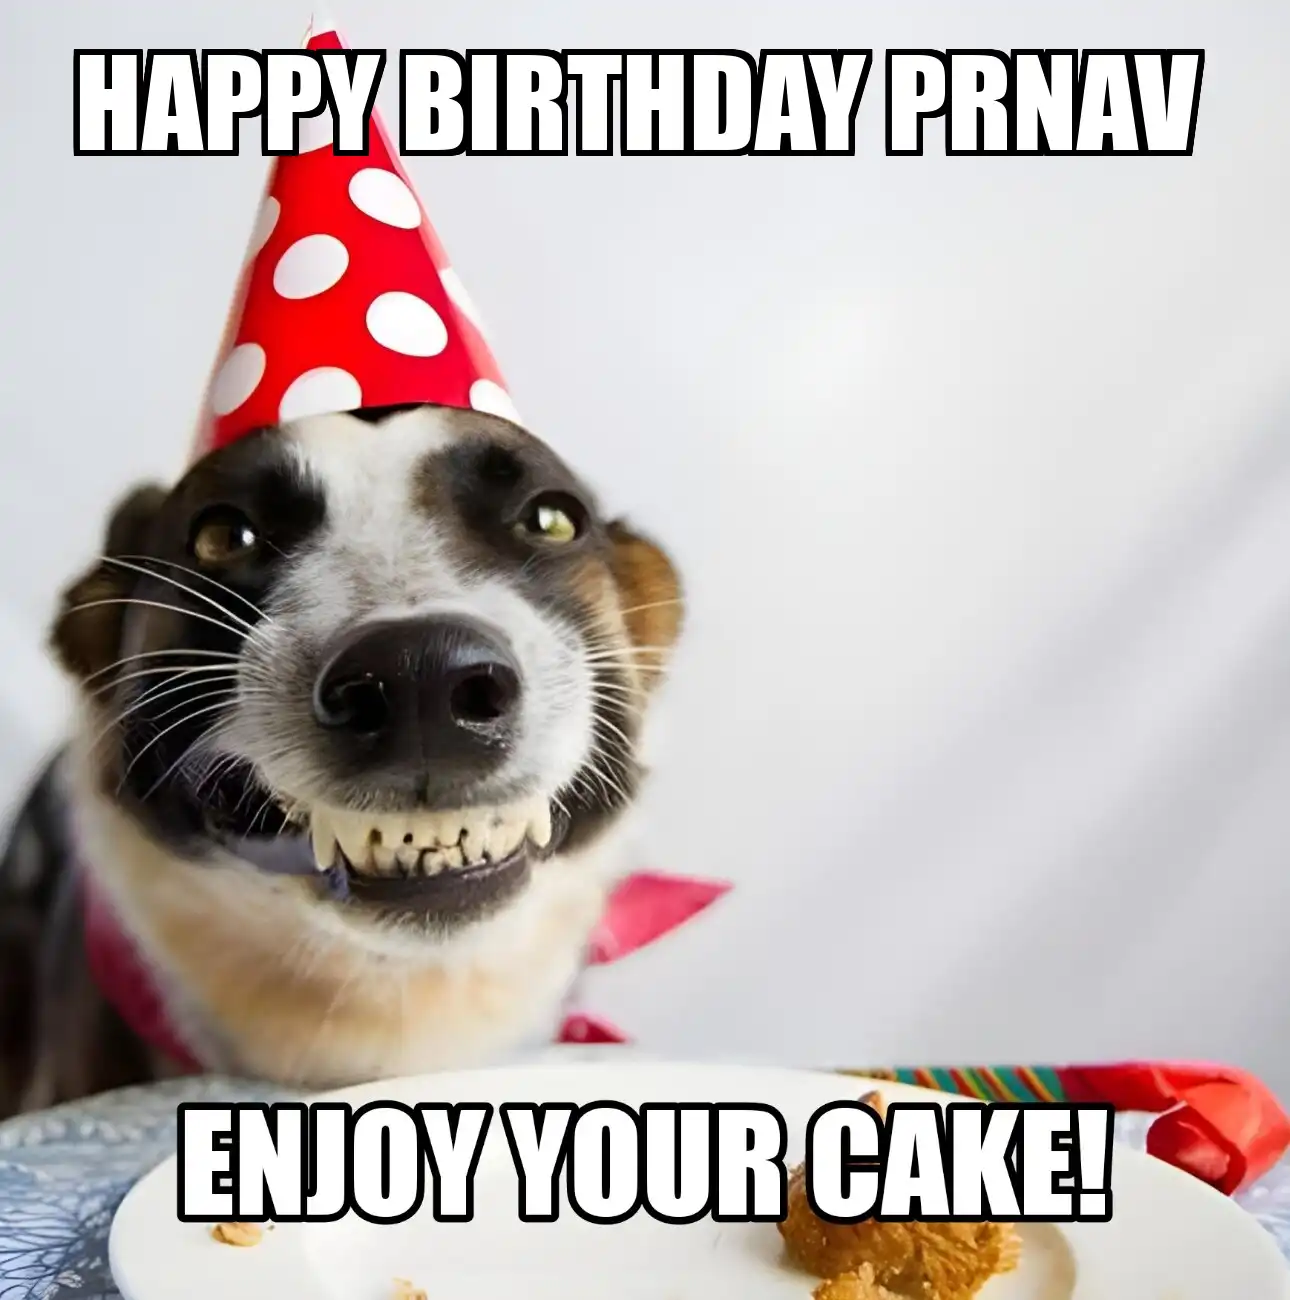 Happy Birthday Prnav Enjoy Your Cake Dog Meme